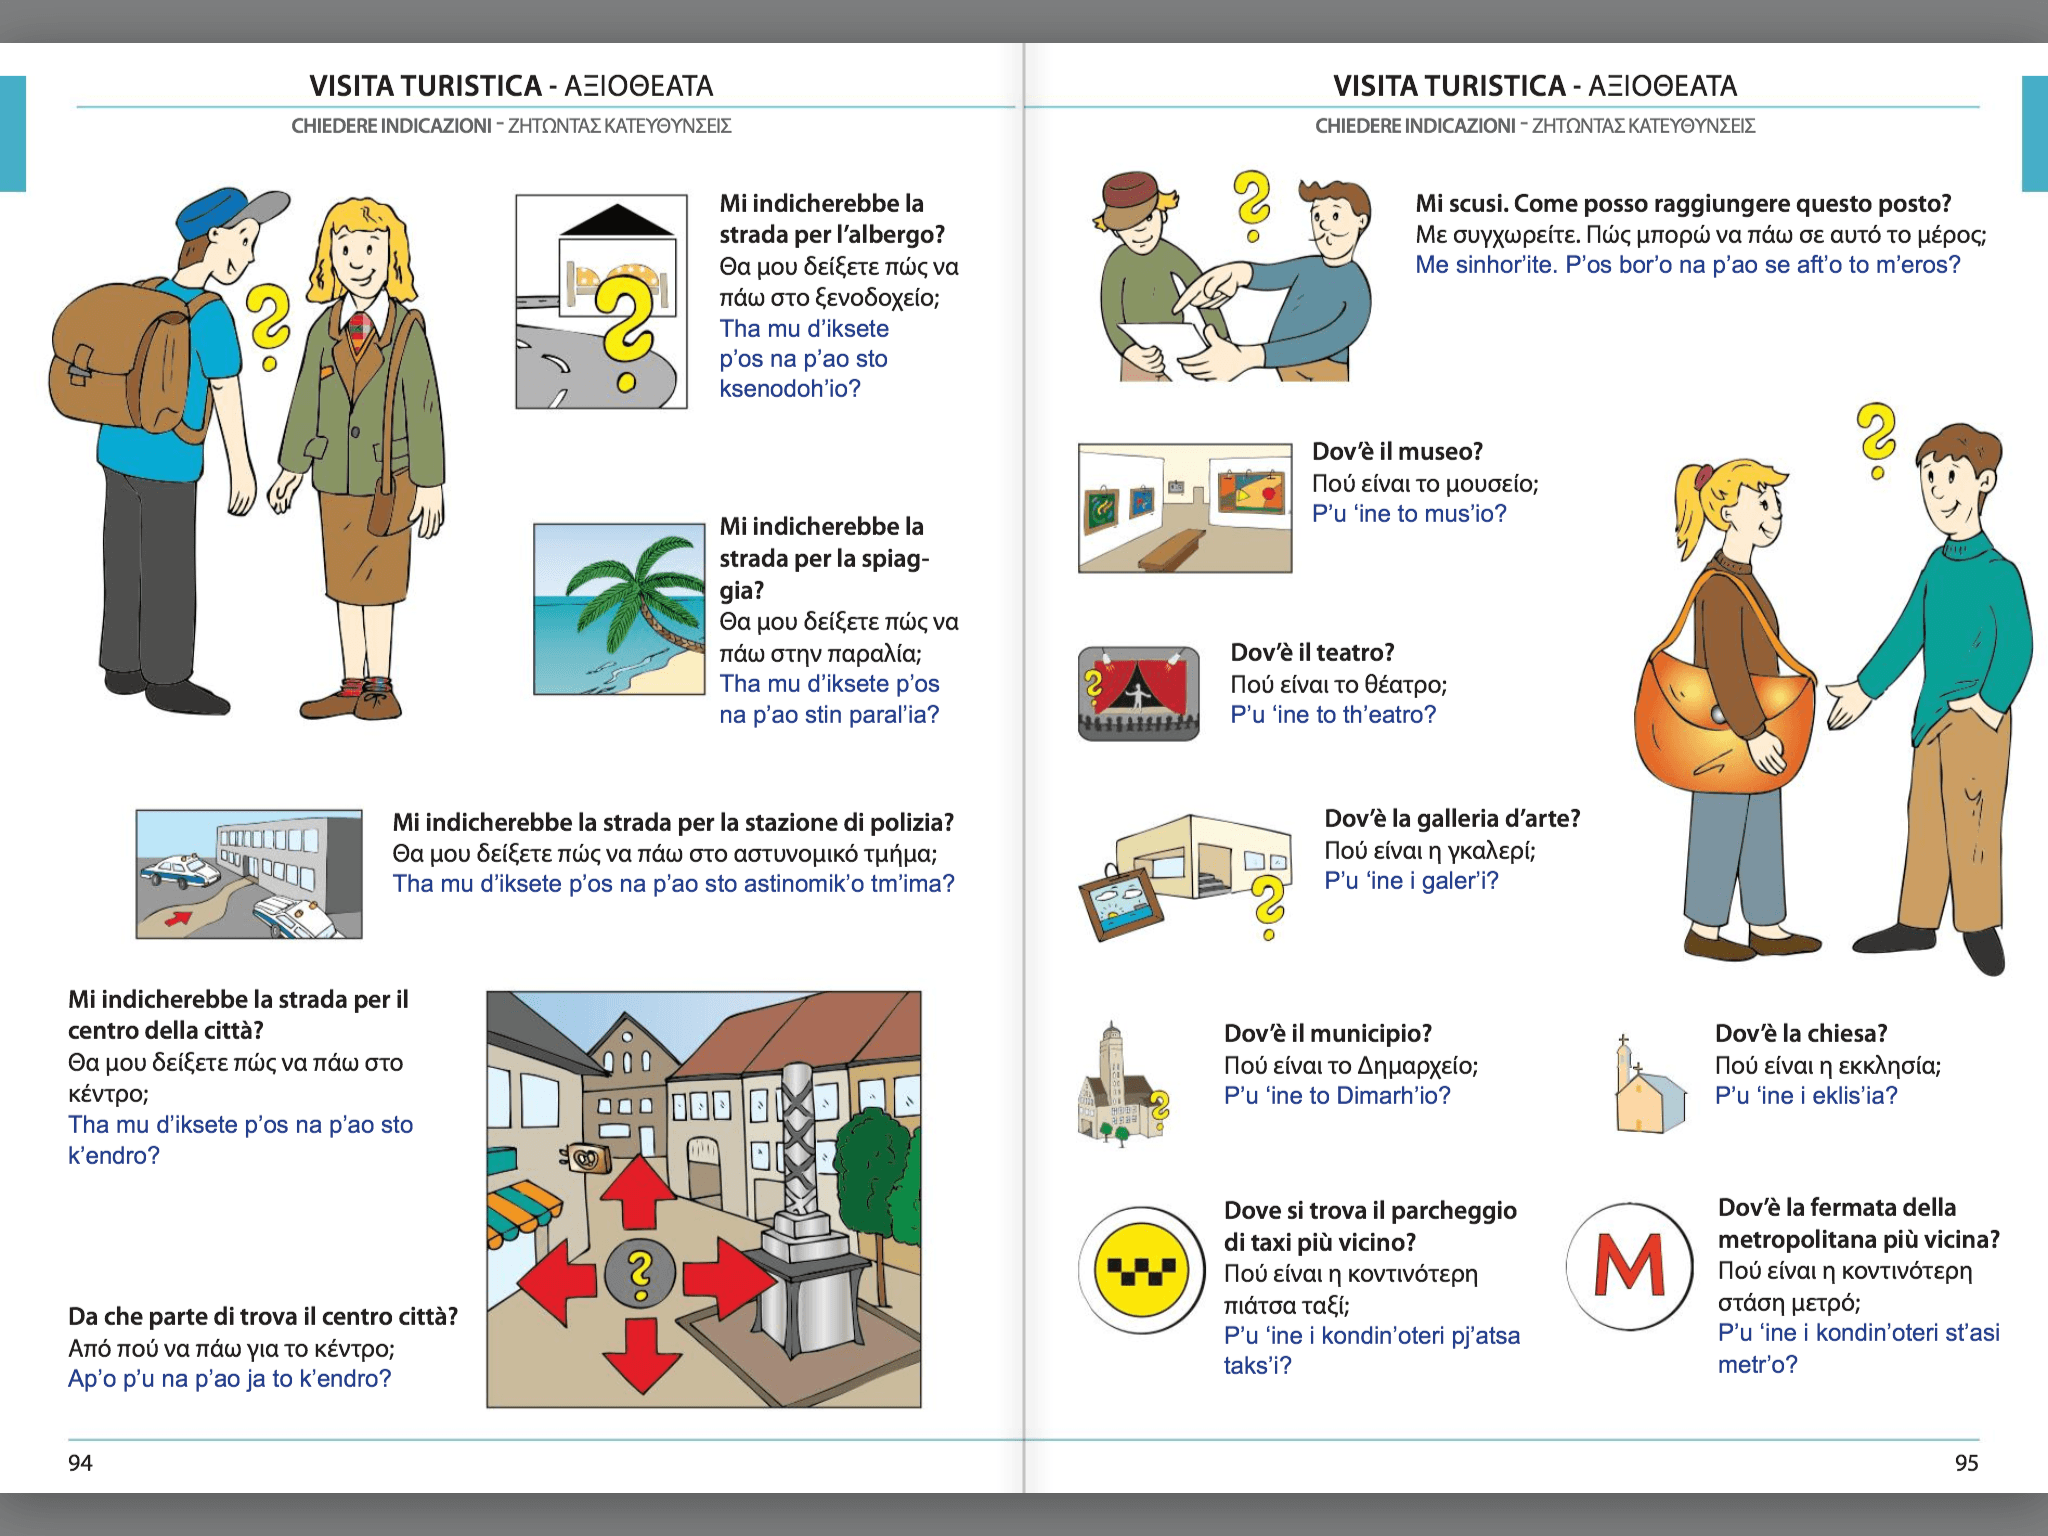 Manuale di conversazione illustrato Italiano-Greco